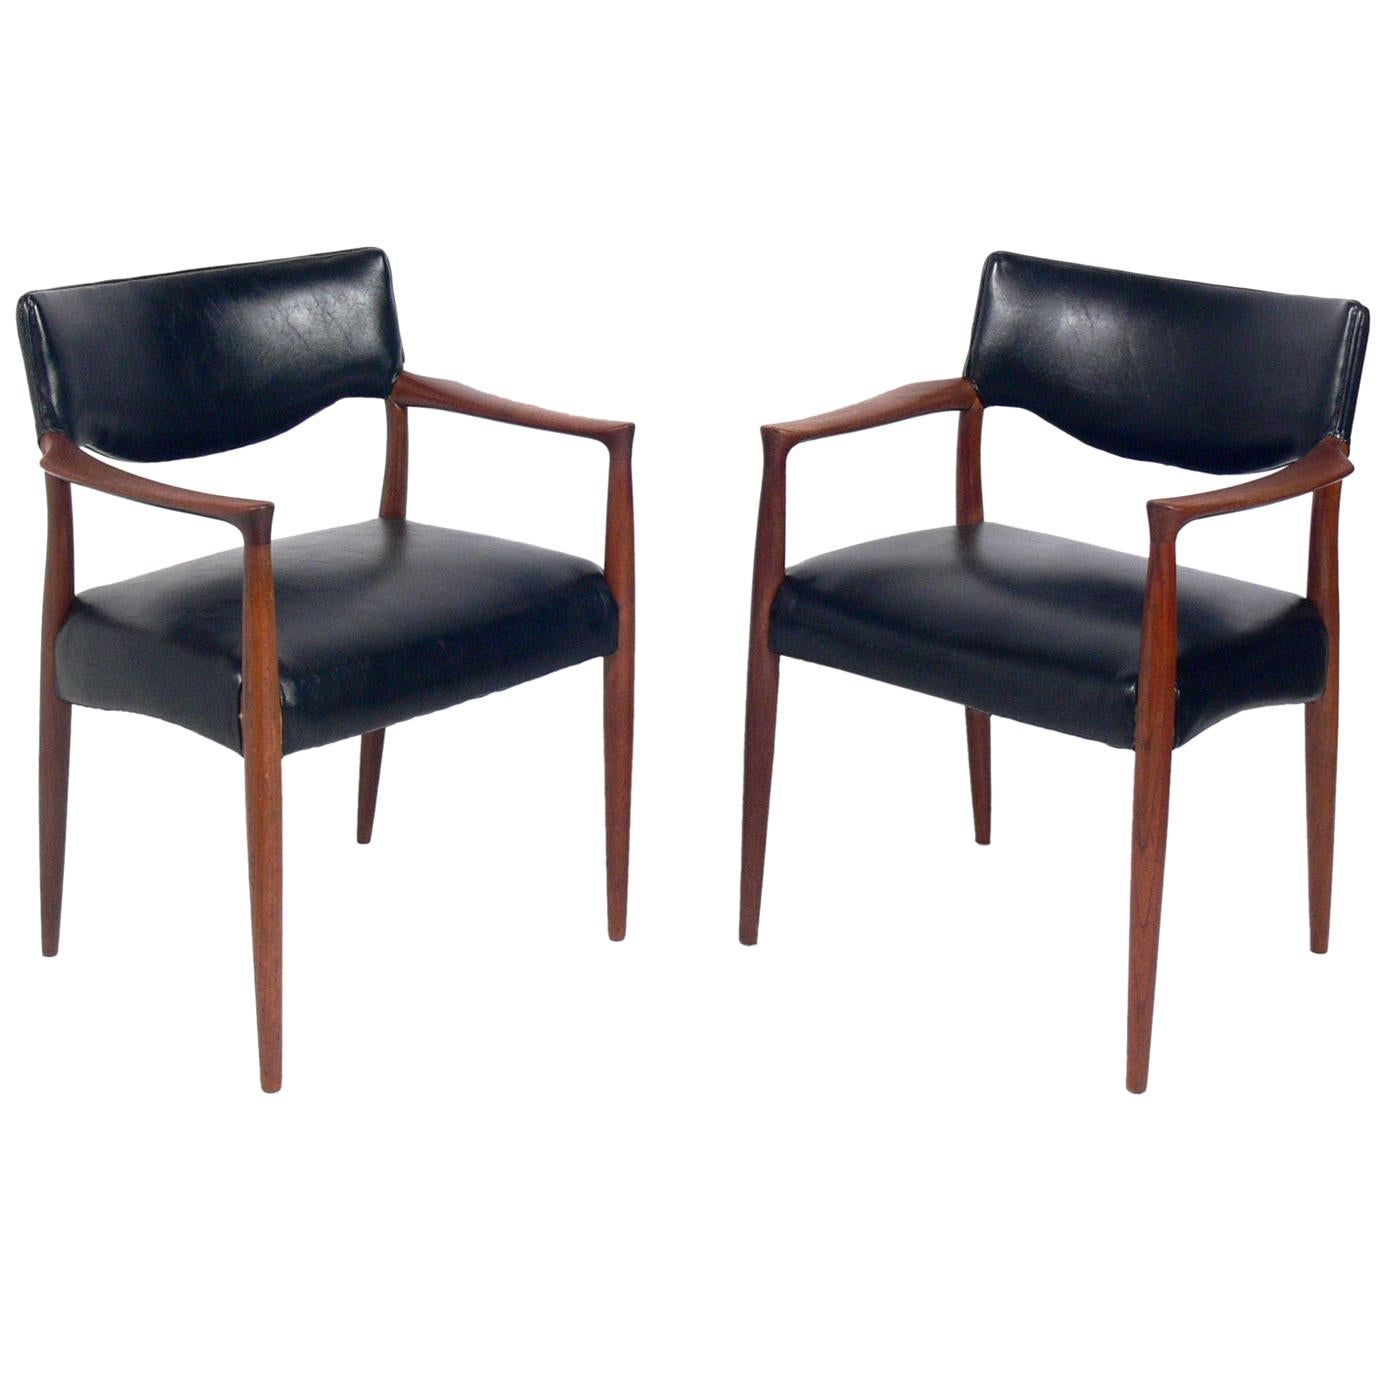 Pair of Danish Modern Chairs